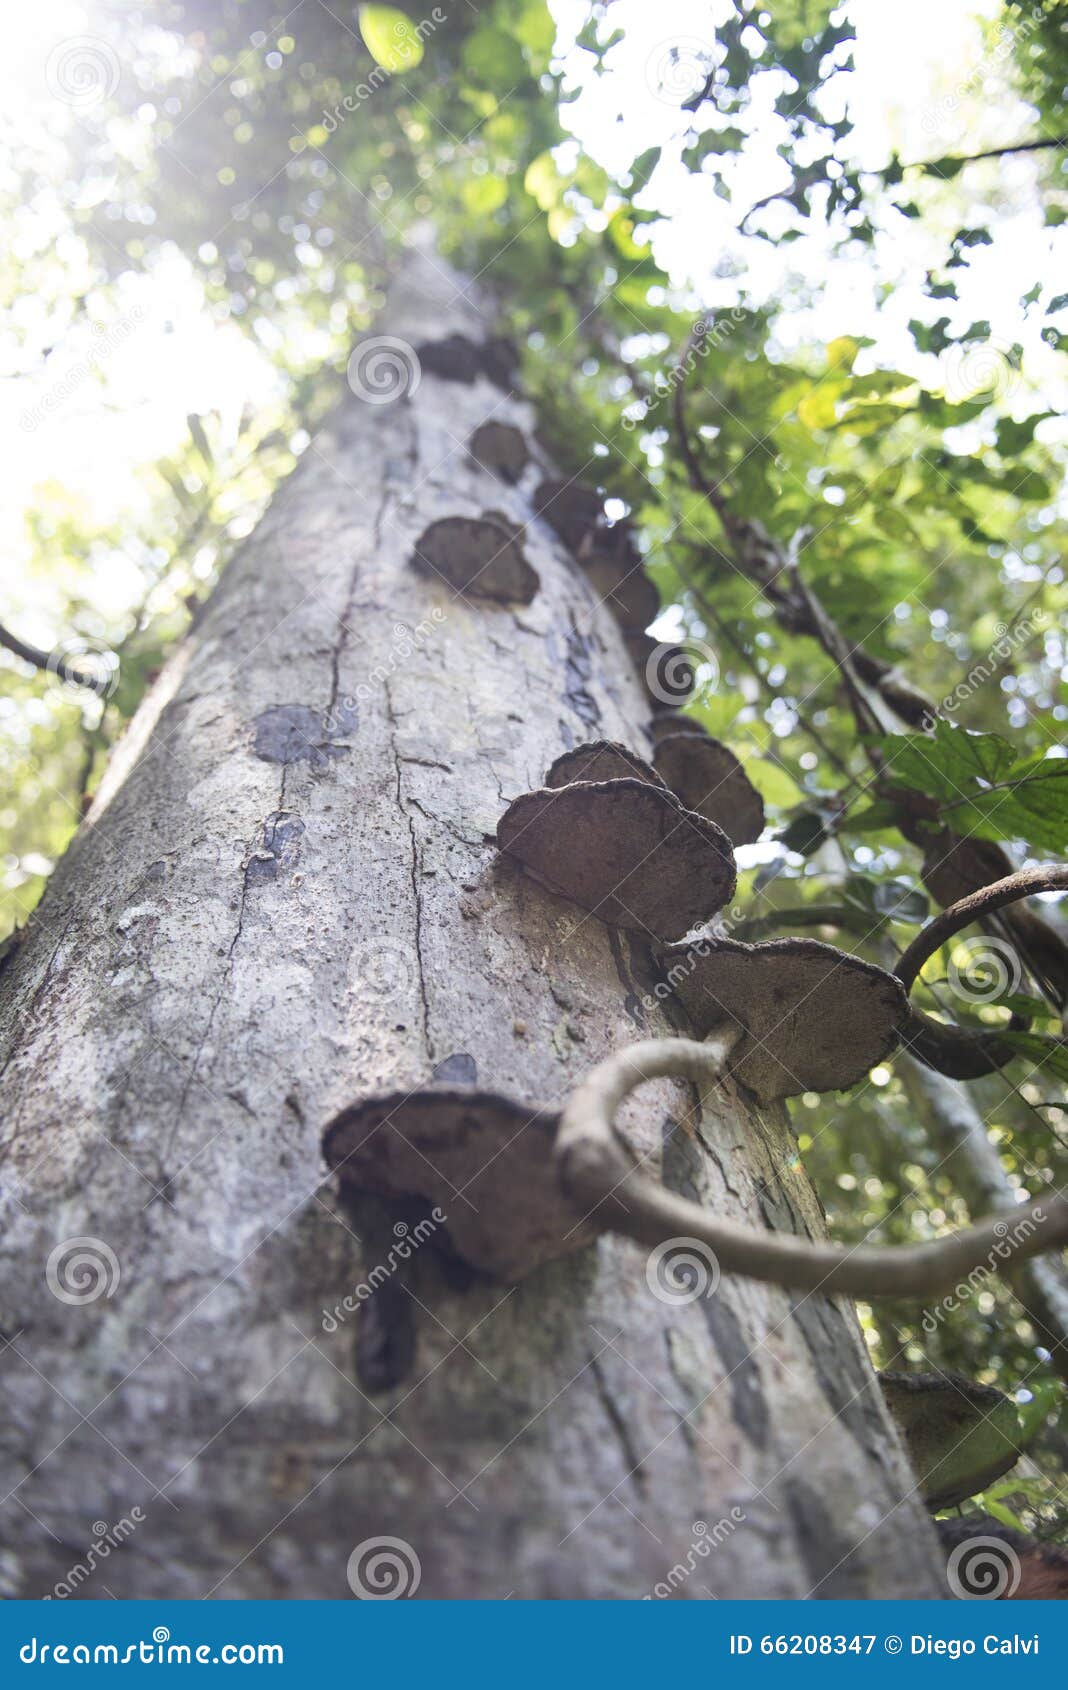 photo stock arbre tropical avec le champignon dans la jungle malaisie image